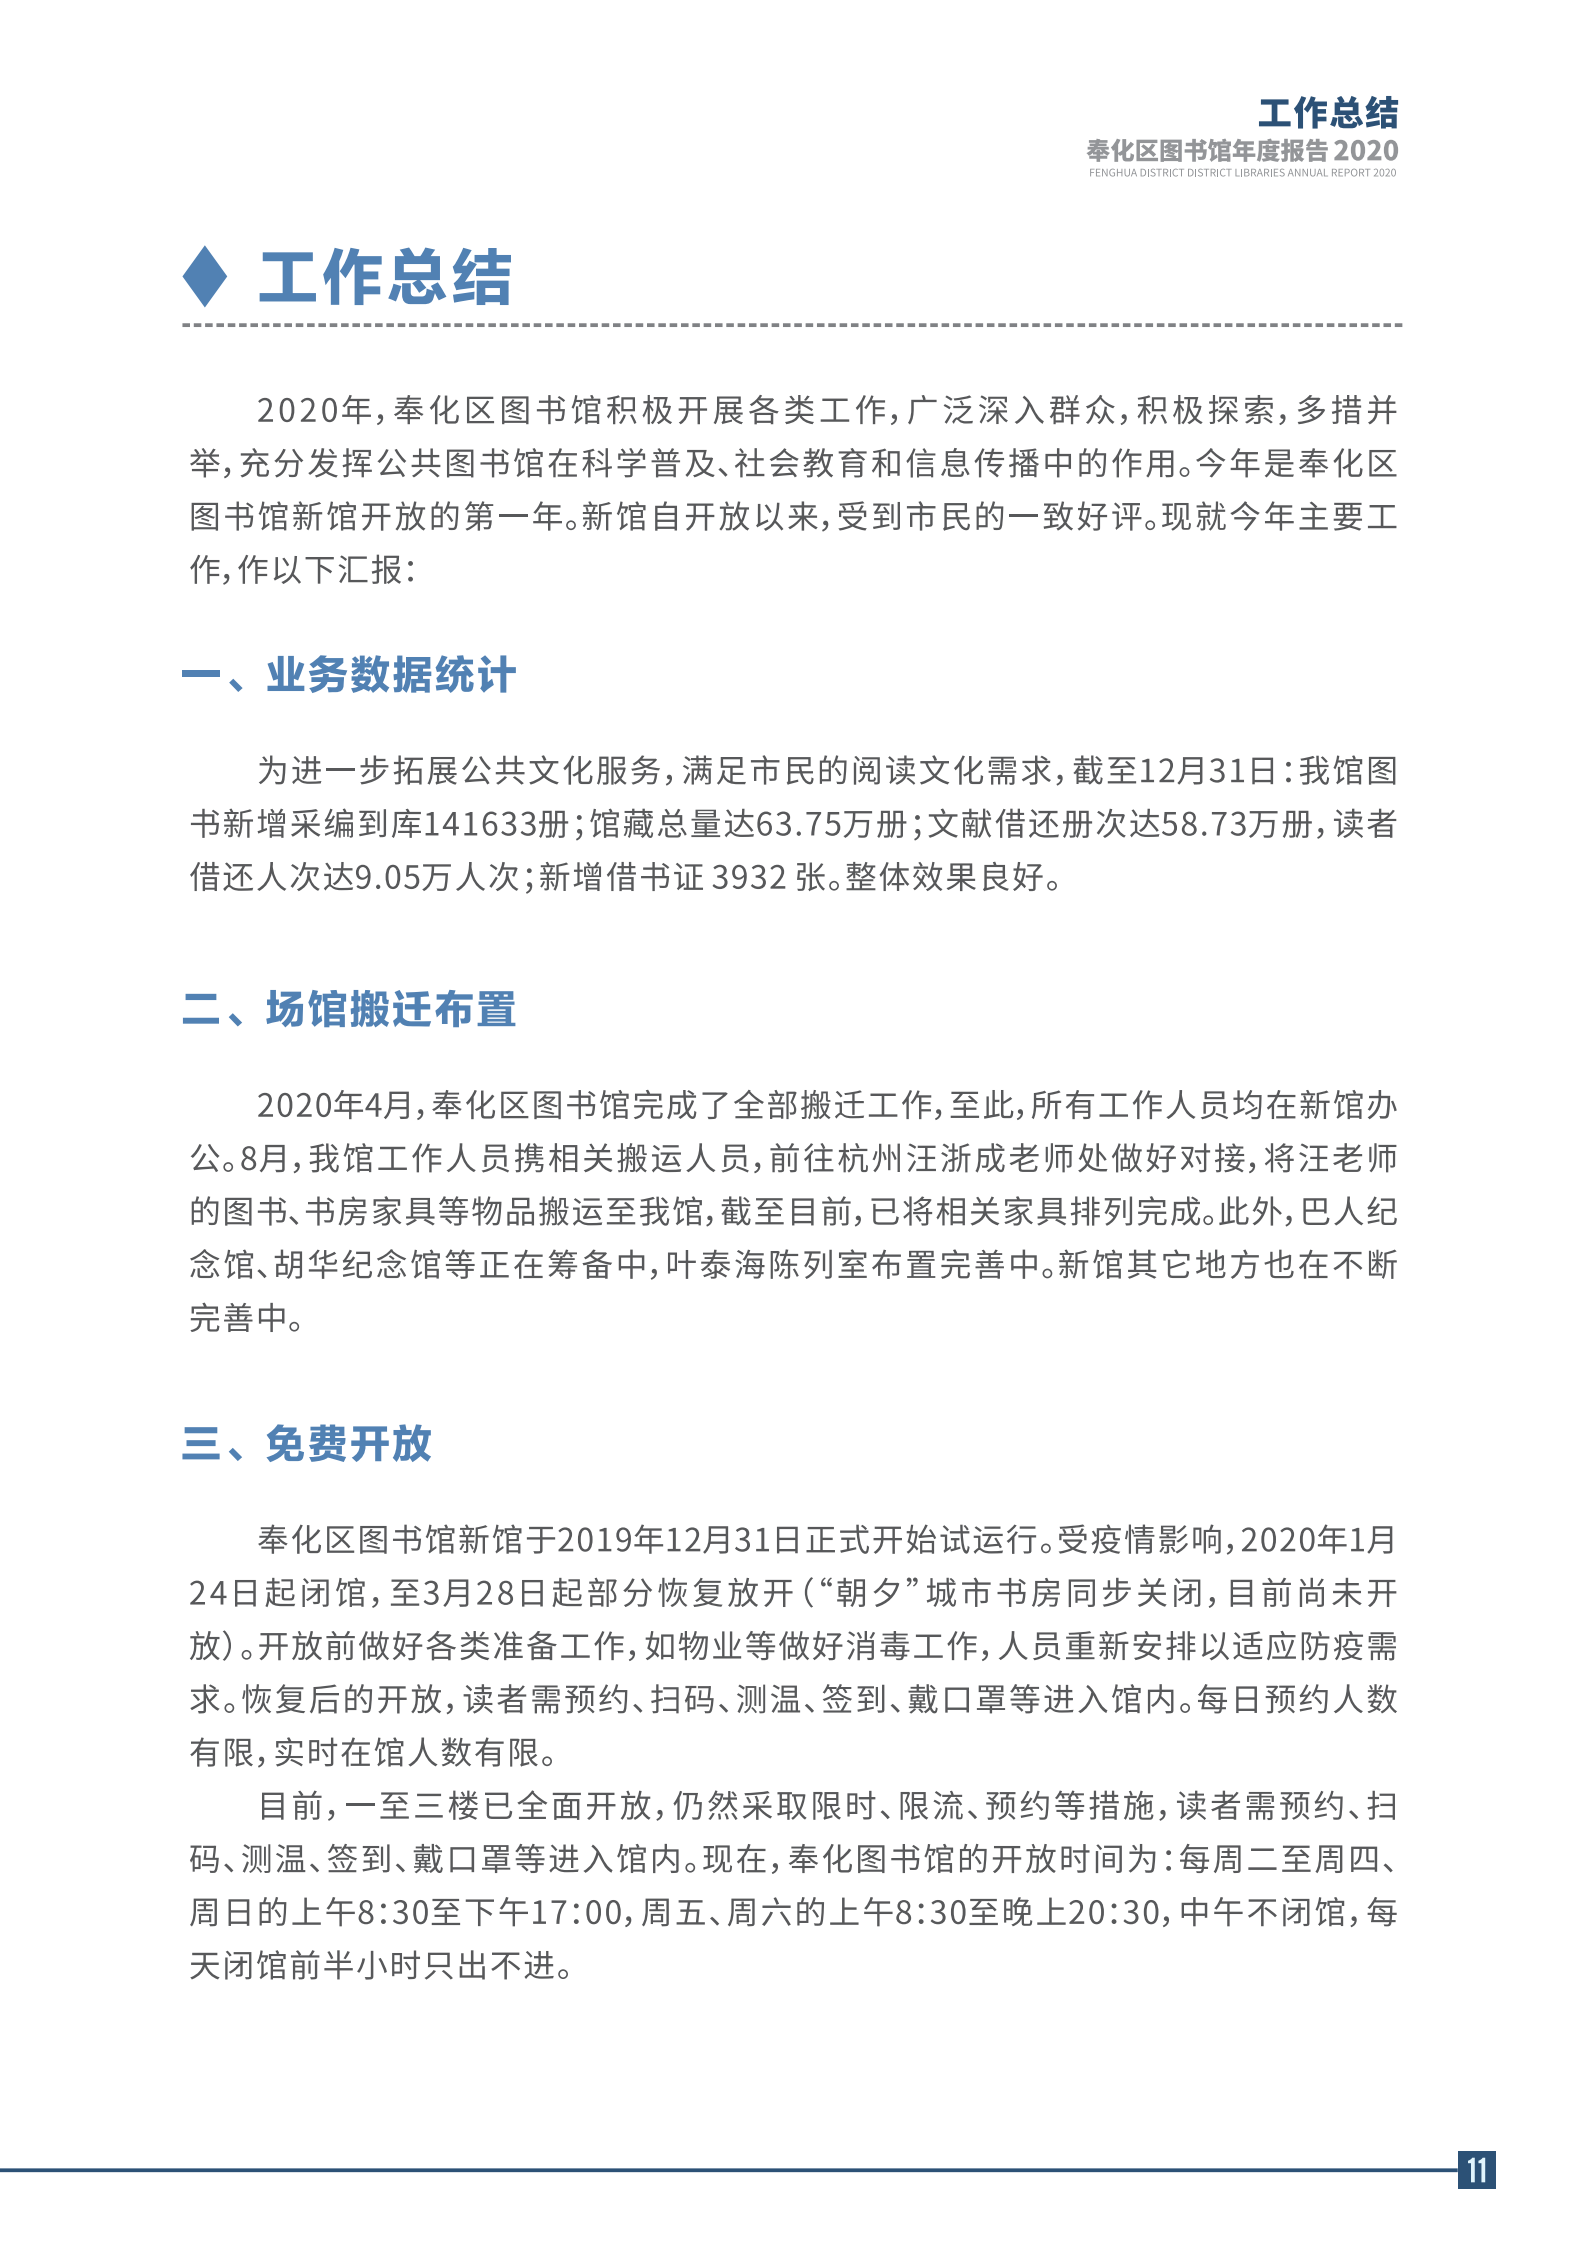 宁波市奉化区图书馆2020年年度报告 终稿_11.png